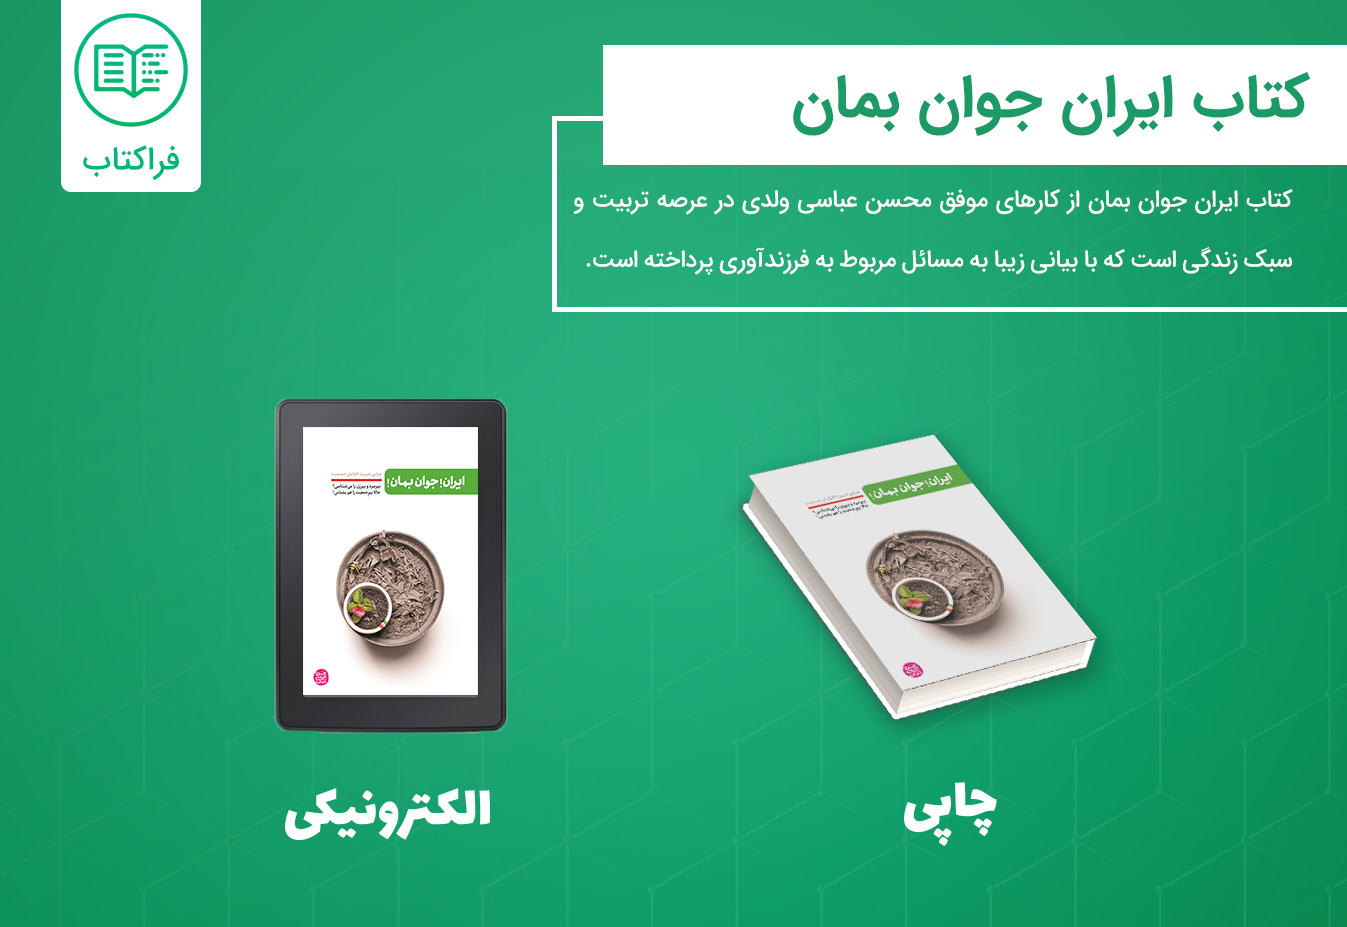 خرید کتاب ایران جوان بمان